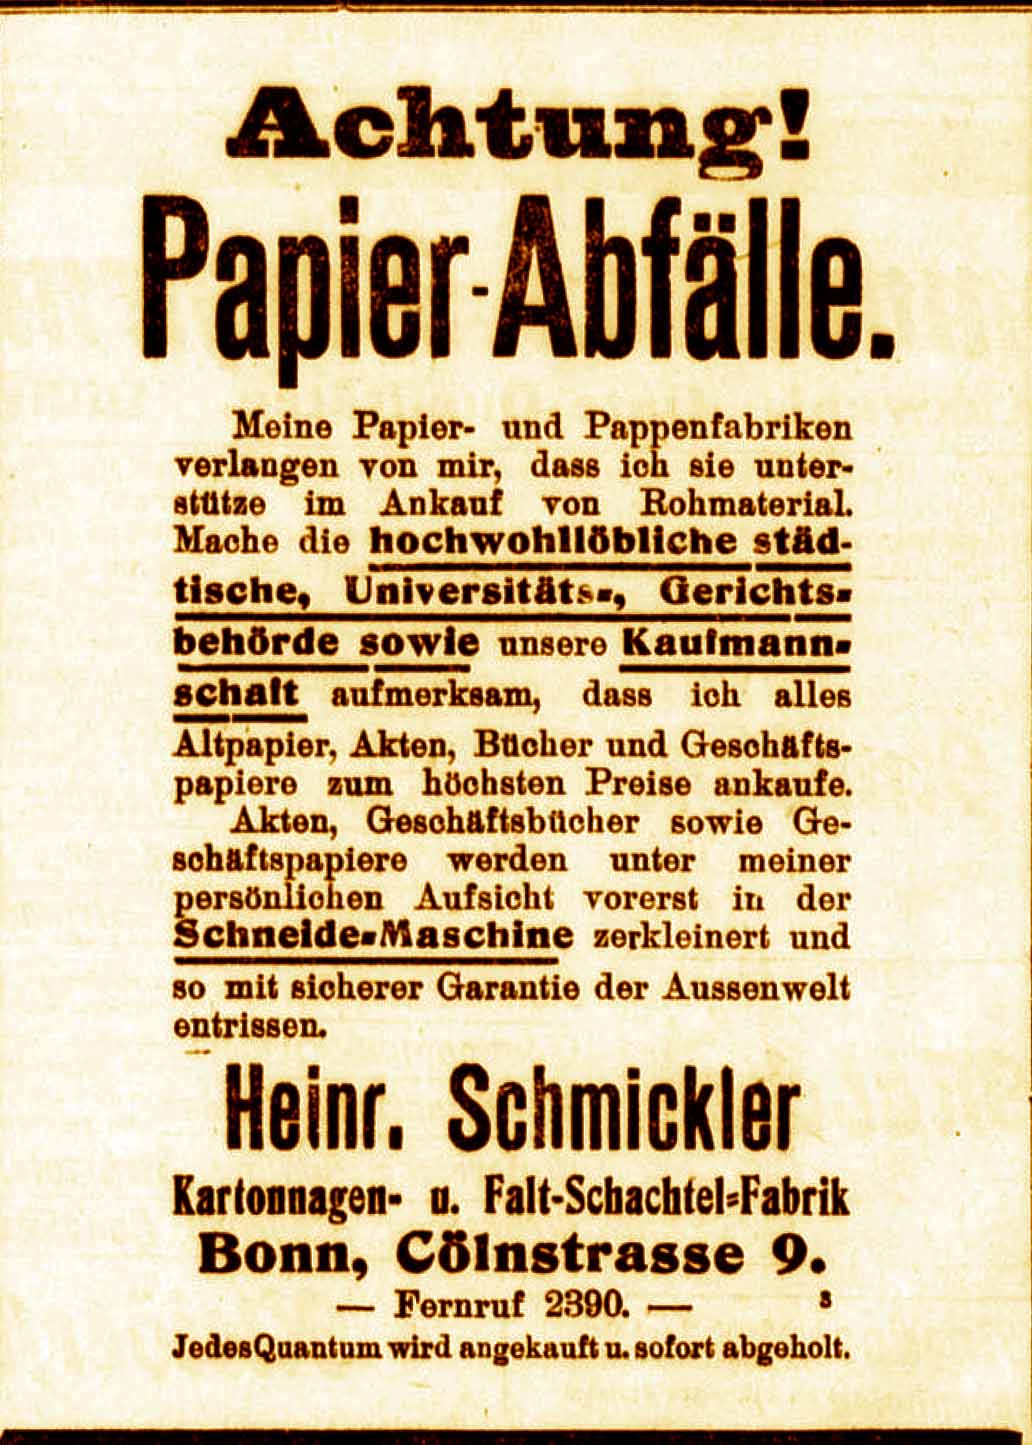 Anzeige im General-Anzeiger vom 29. März 1916